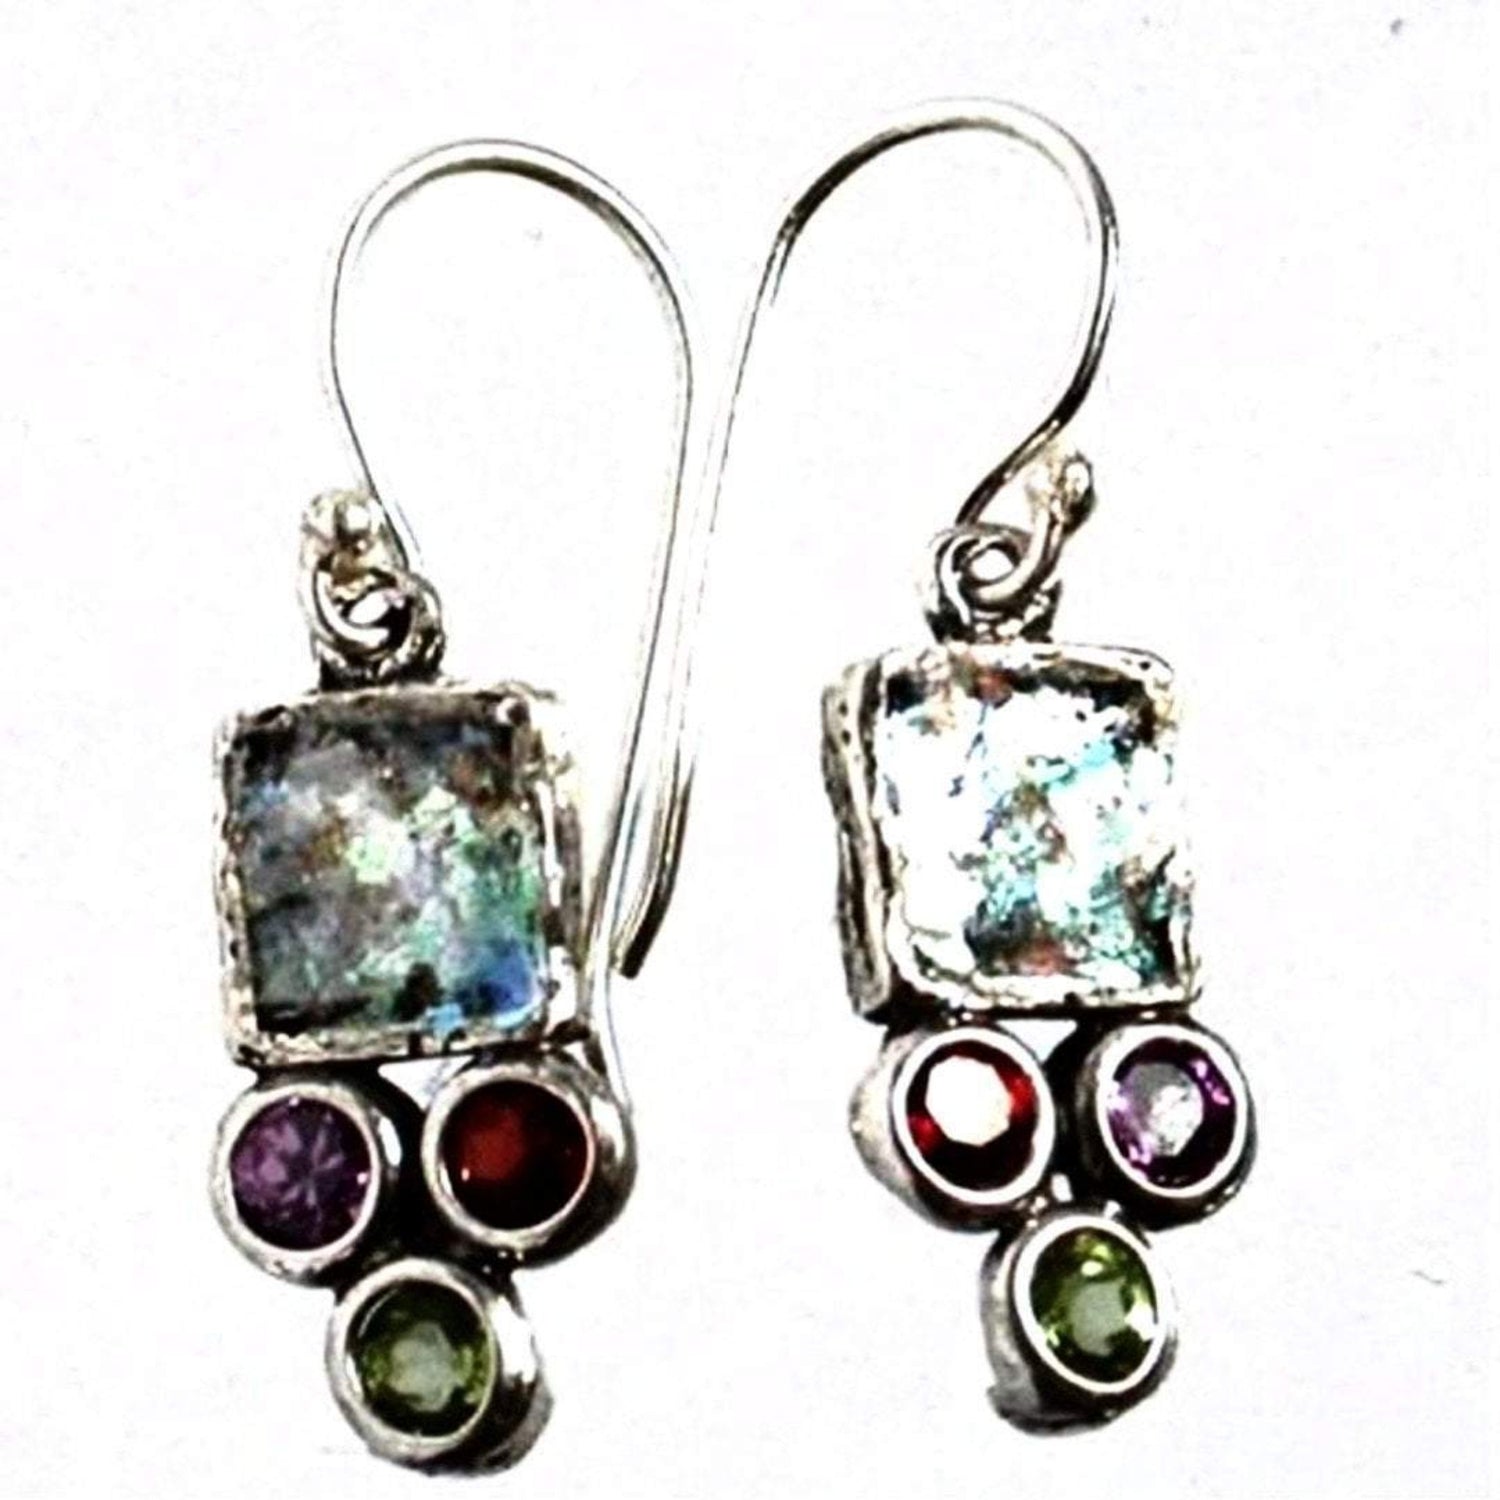 Roman glass jewelry earrings